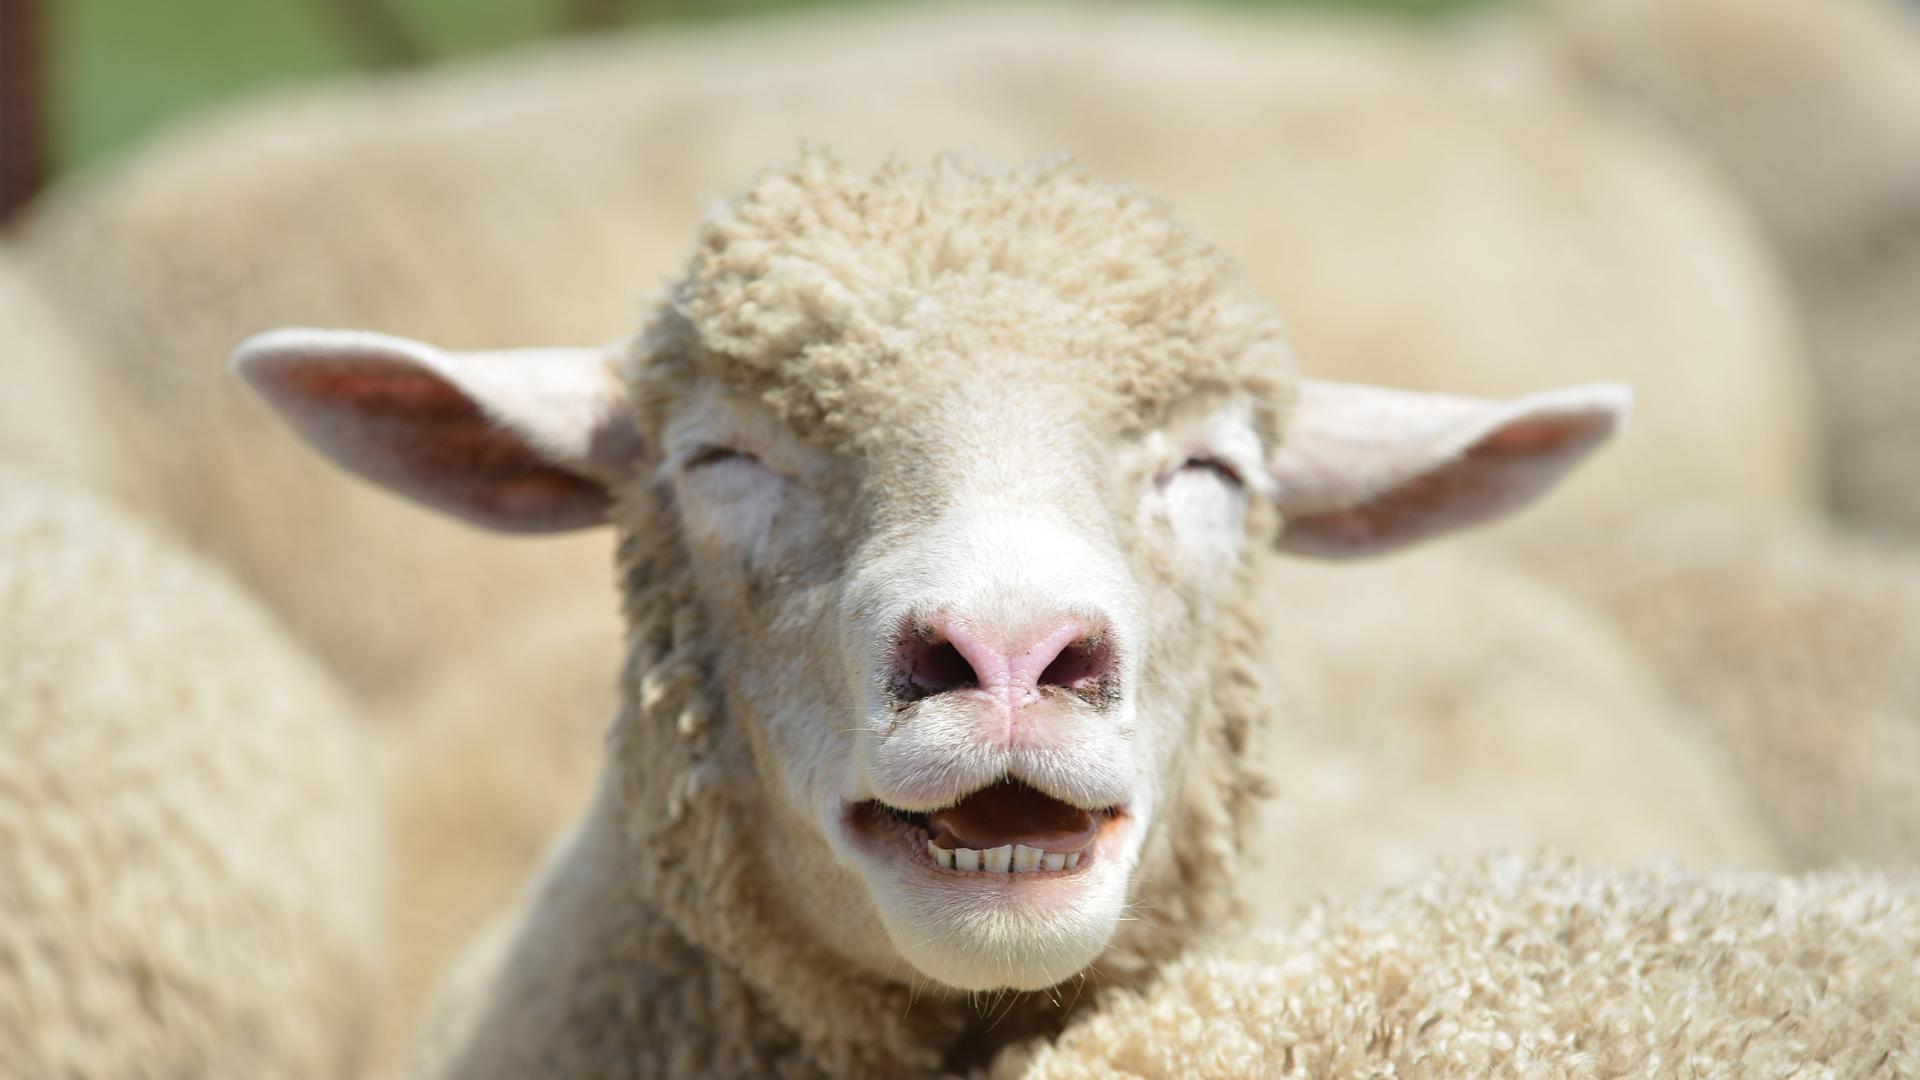 Ein Schaf inmitten einer Herde hebt den Kopf und blökt. Es wirkt so, als würde es lachen.